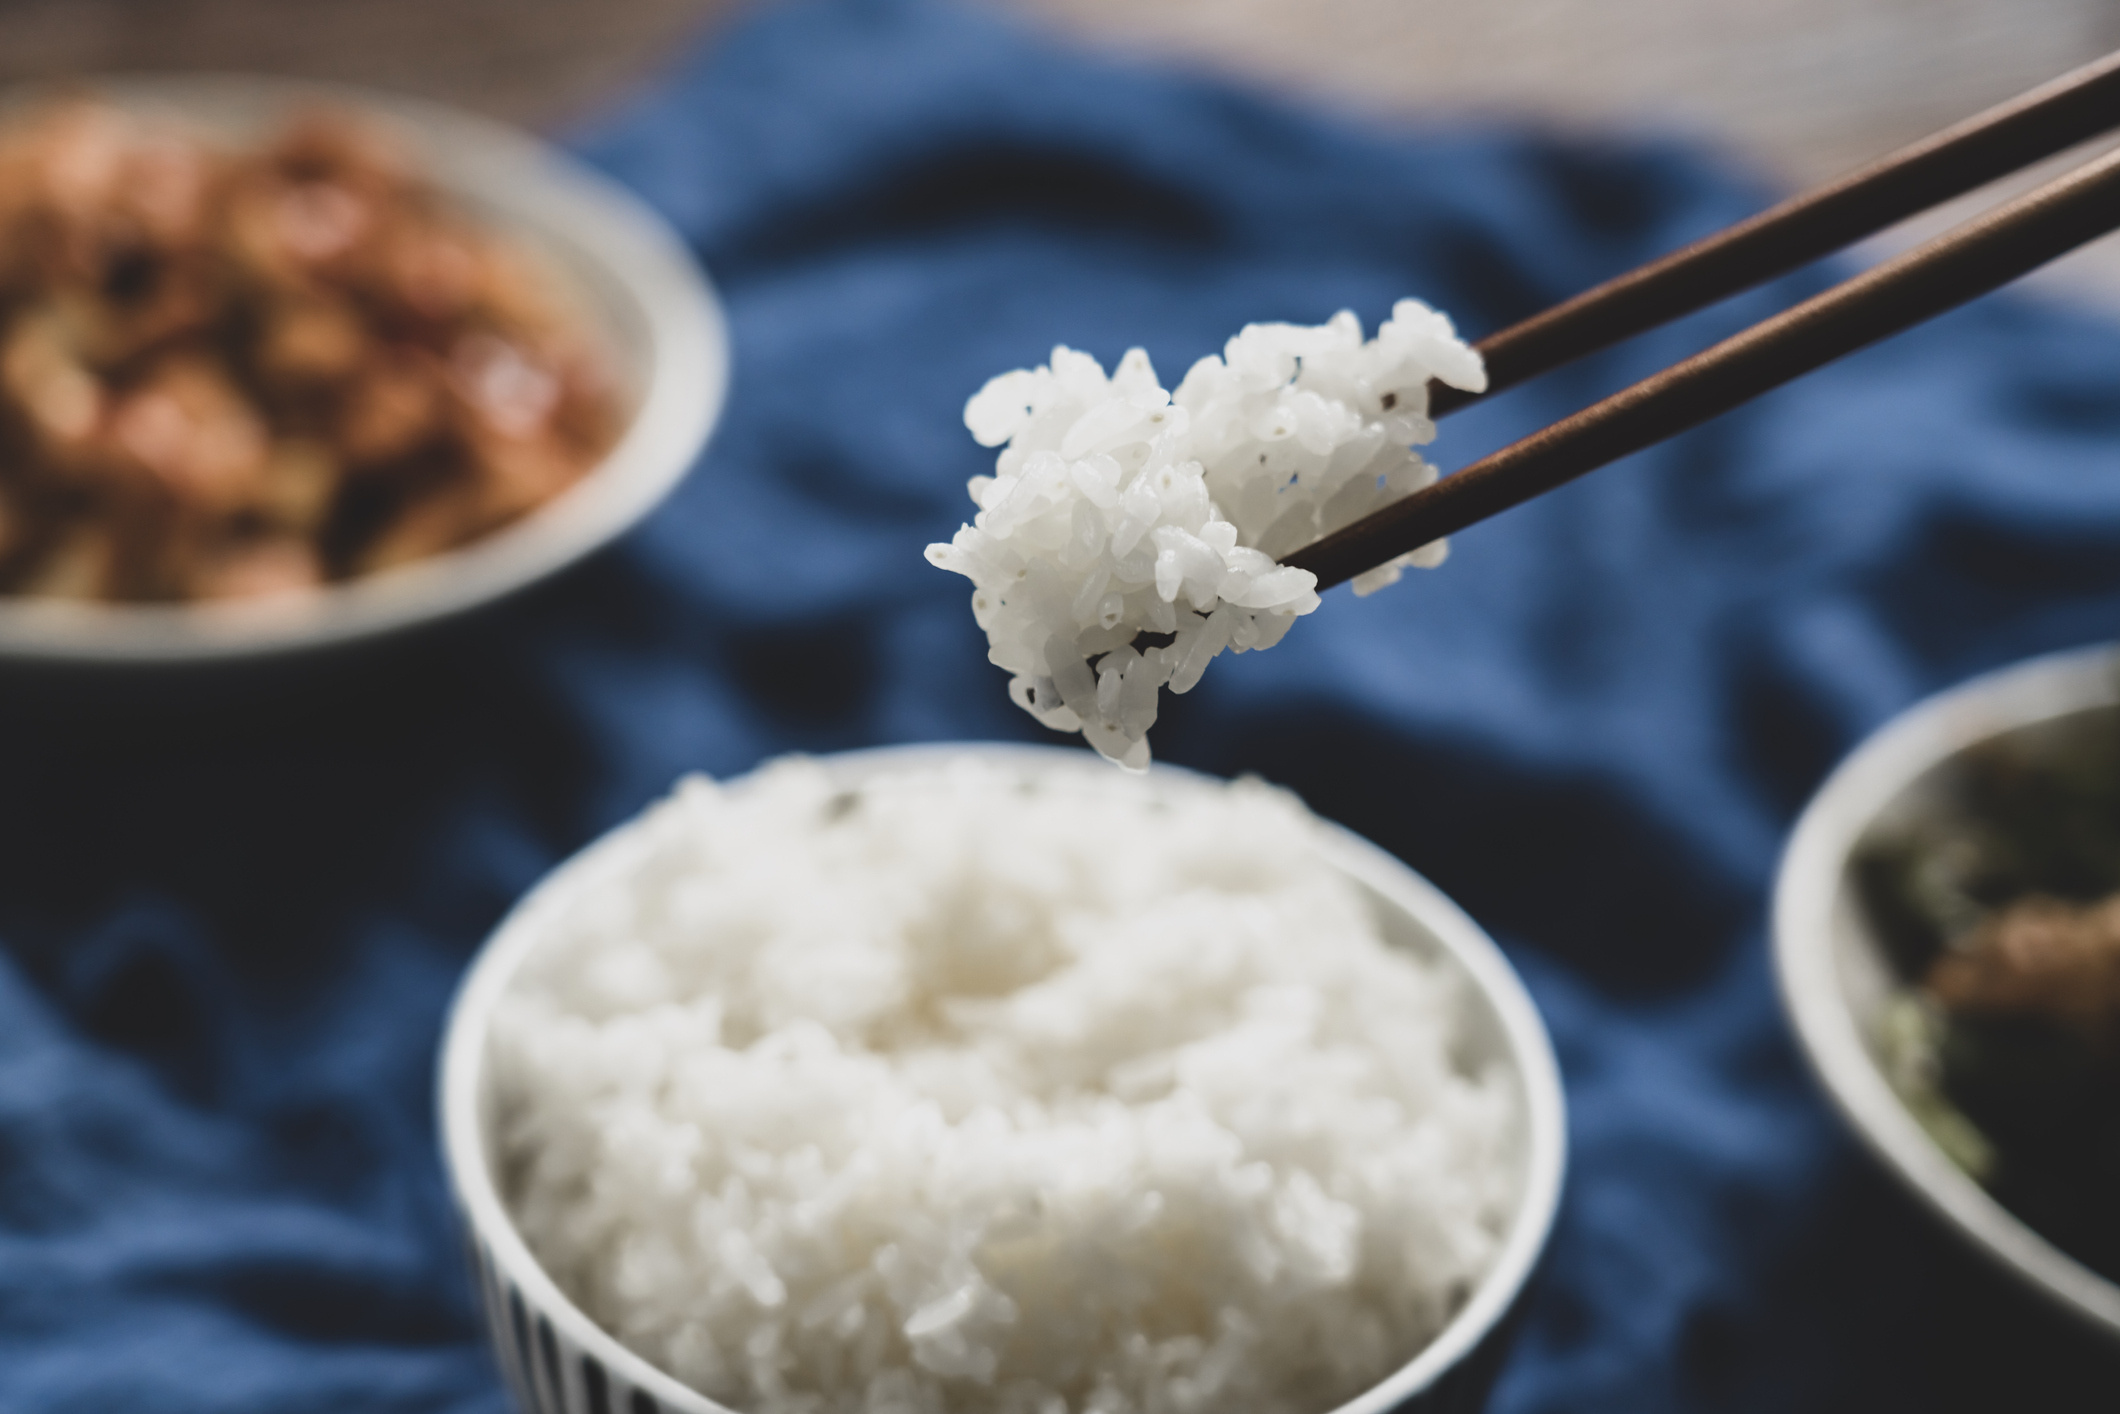 Bár kevesebb kalória van a fehér rizsben, mint a finomlisztből készült tésztákban, tápanyagtartalma jelentősen rosszabb, mint a teljes kiőrlésű gabonáké. De a glikémiás indexe is csak közepesnek mondható a maga 64 pontjával. Magas szénhidráttartalma miatt pedig vércukorszint emelkedést okozhat, ezért gyorsan újra éhes lehetsz tőle. Ha fogyni szeretnél a basmati vagy a barna rizs a te köreted.